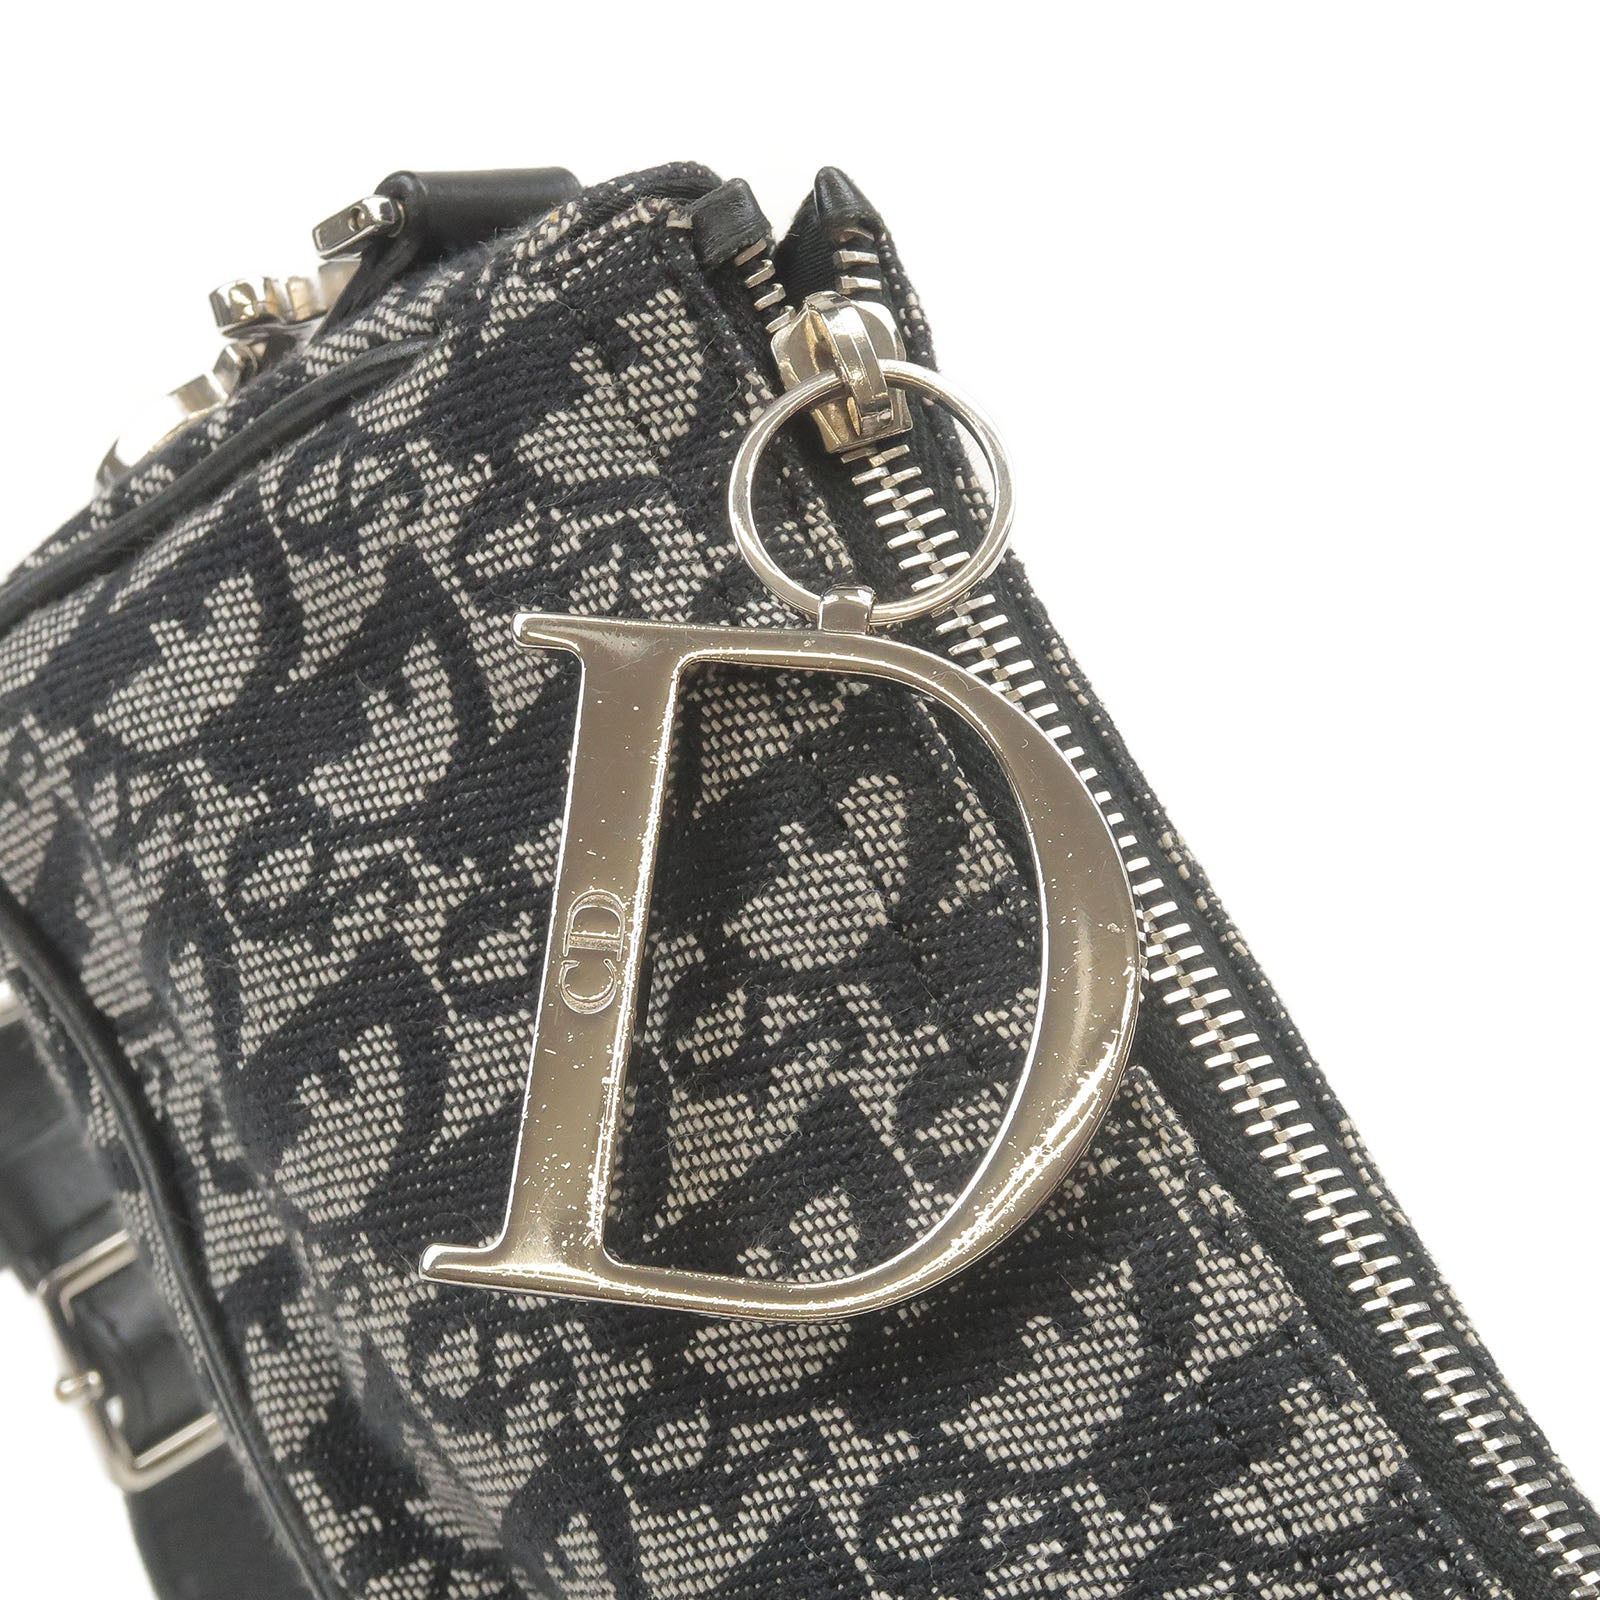 Dior Grey/Black Diorissimo Canvas Pochette Bag